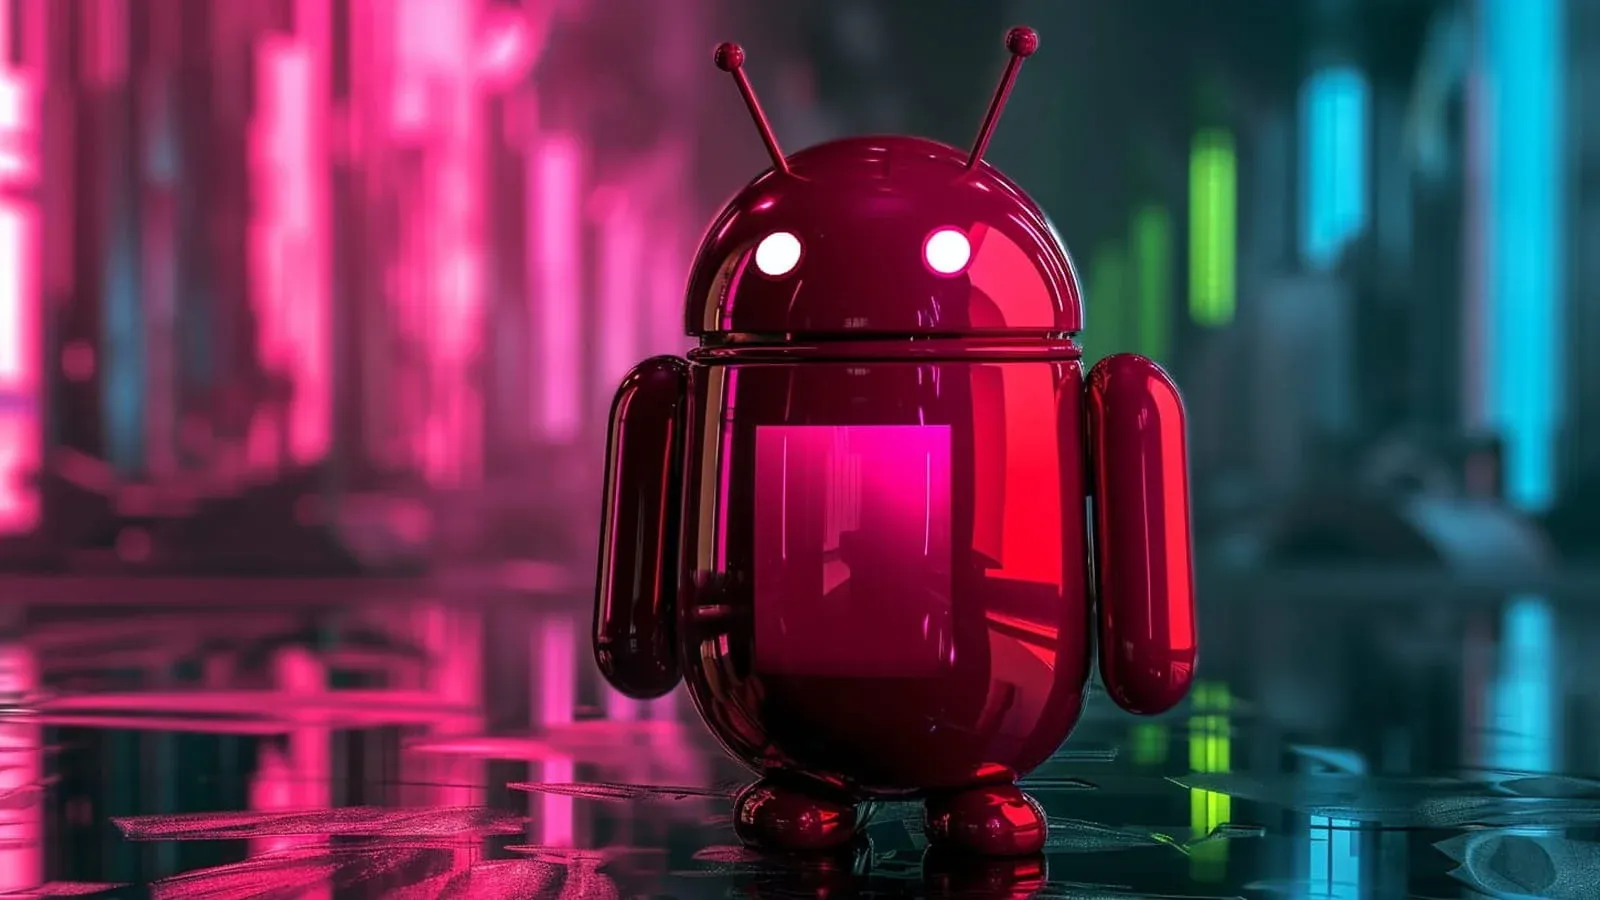 Phần mềm độc hại Brokewell mới chiếm quyền điều khiển thiết bị Android và đánh cắp dữ liệu